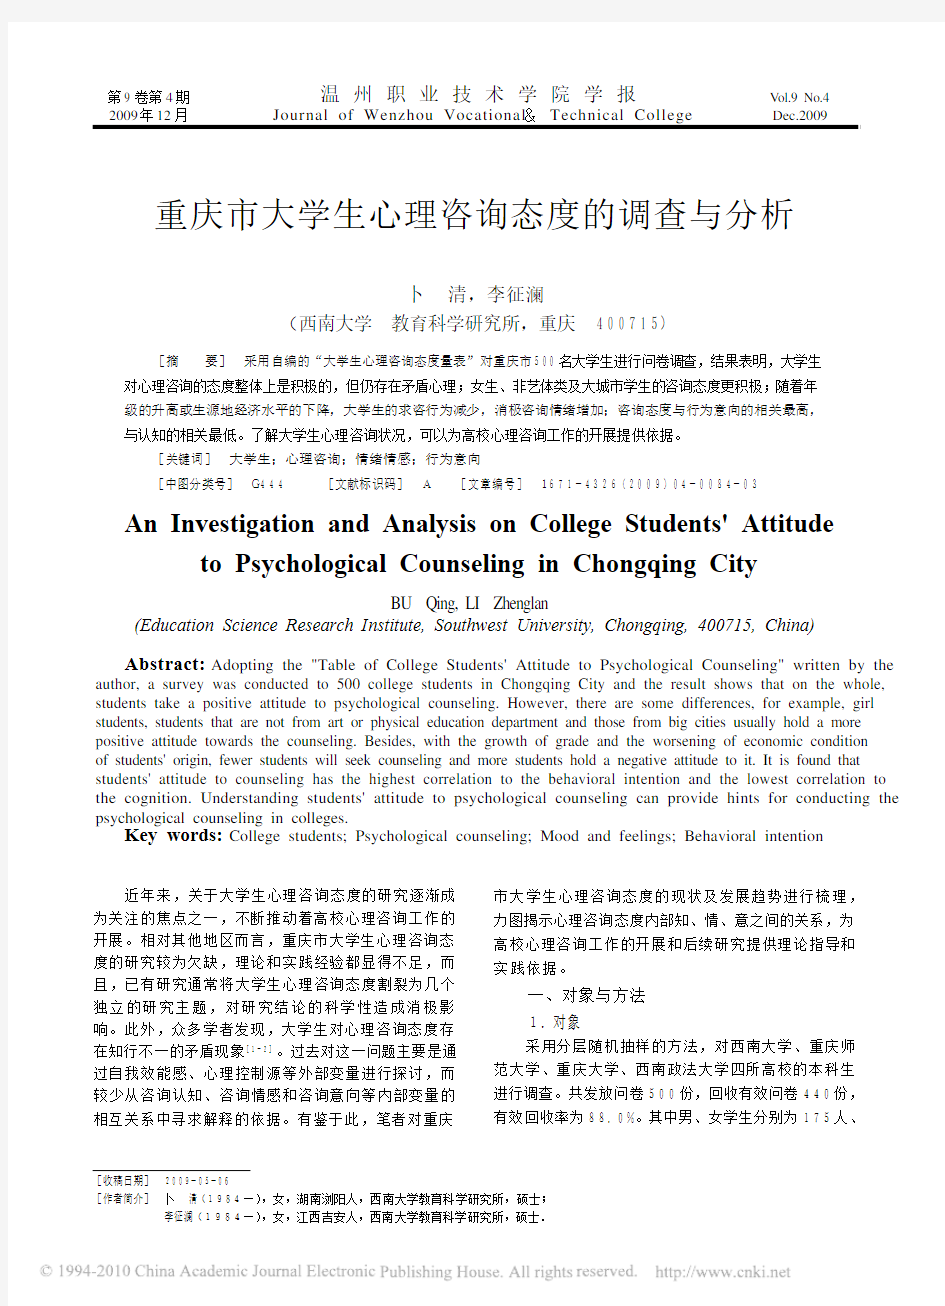 重庆市大学生心理咨询态度的调查与分析